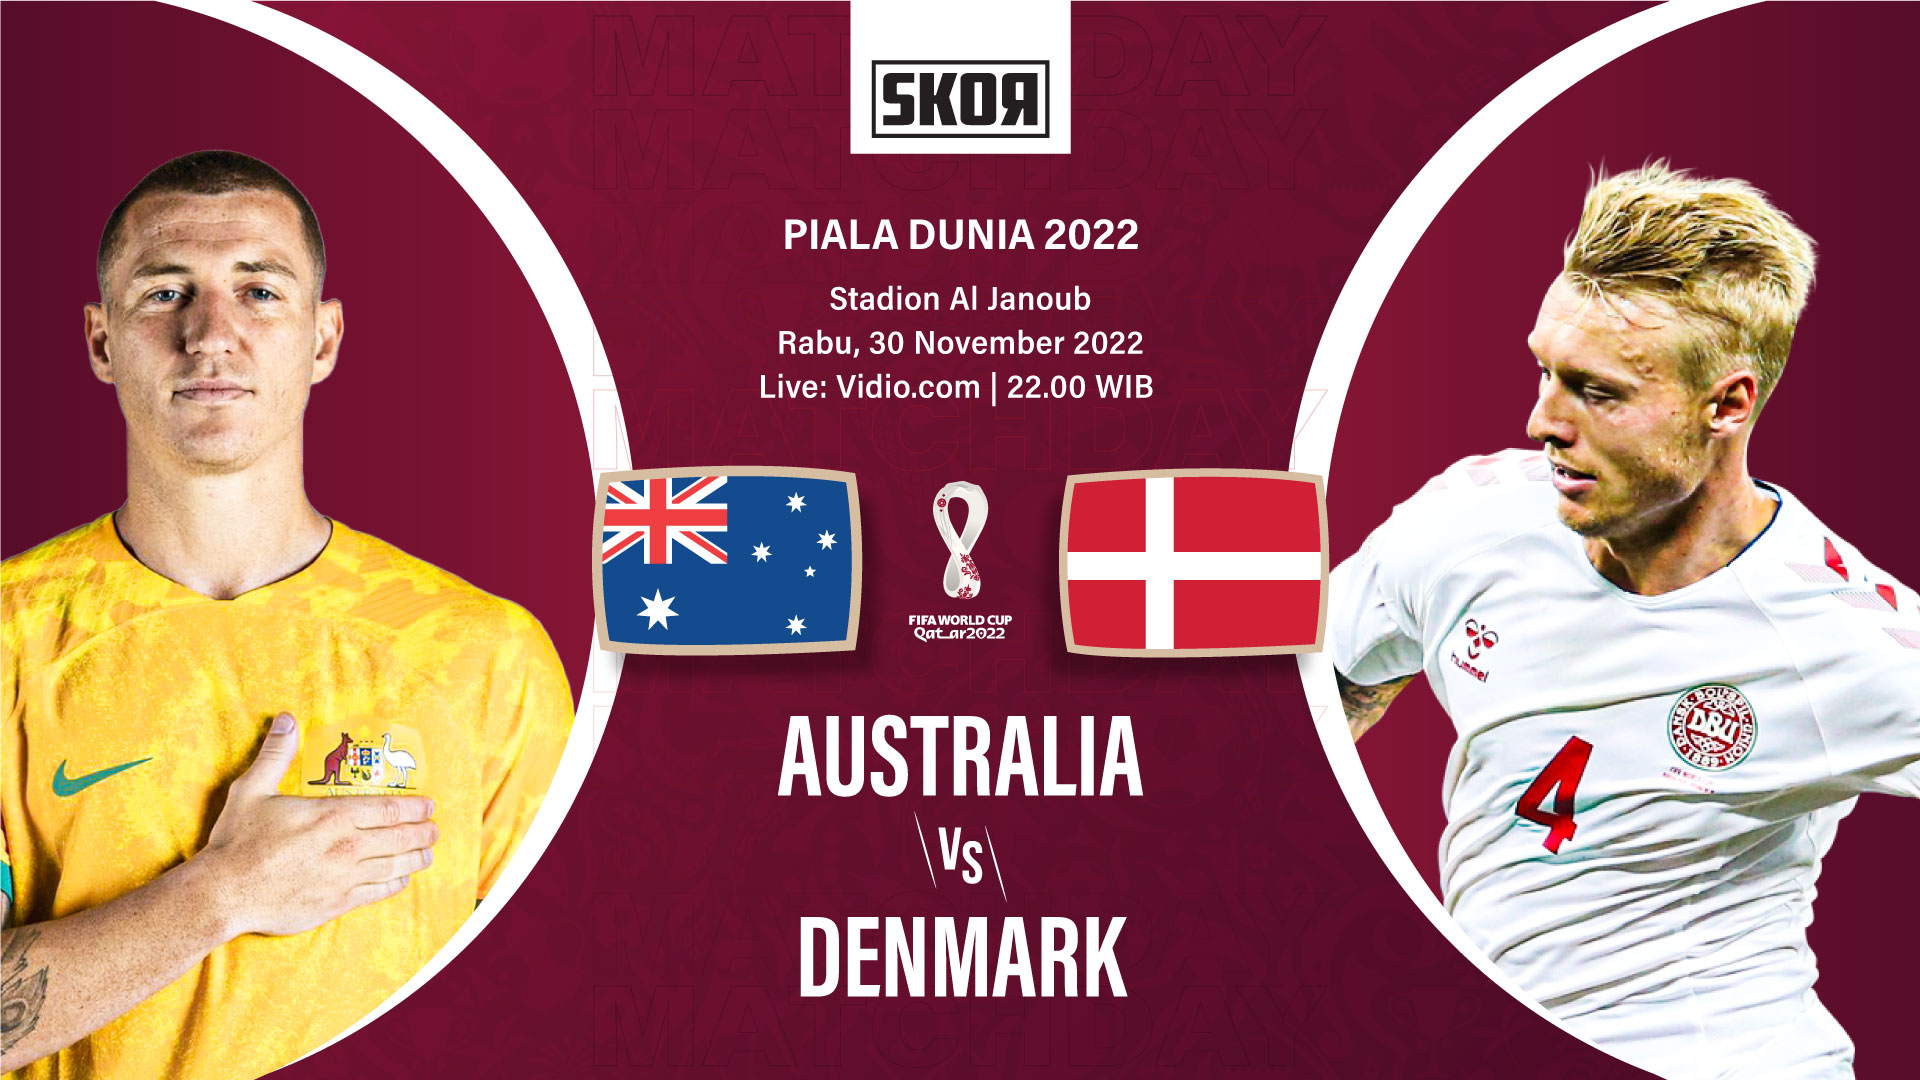 Piala Dunia 2022: Head to Head Australia vs Denmark